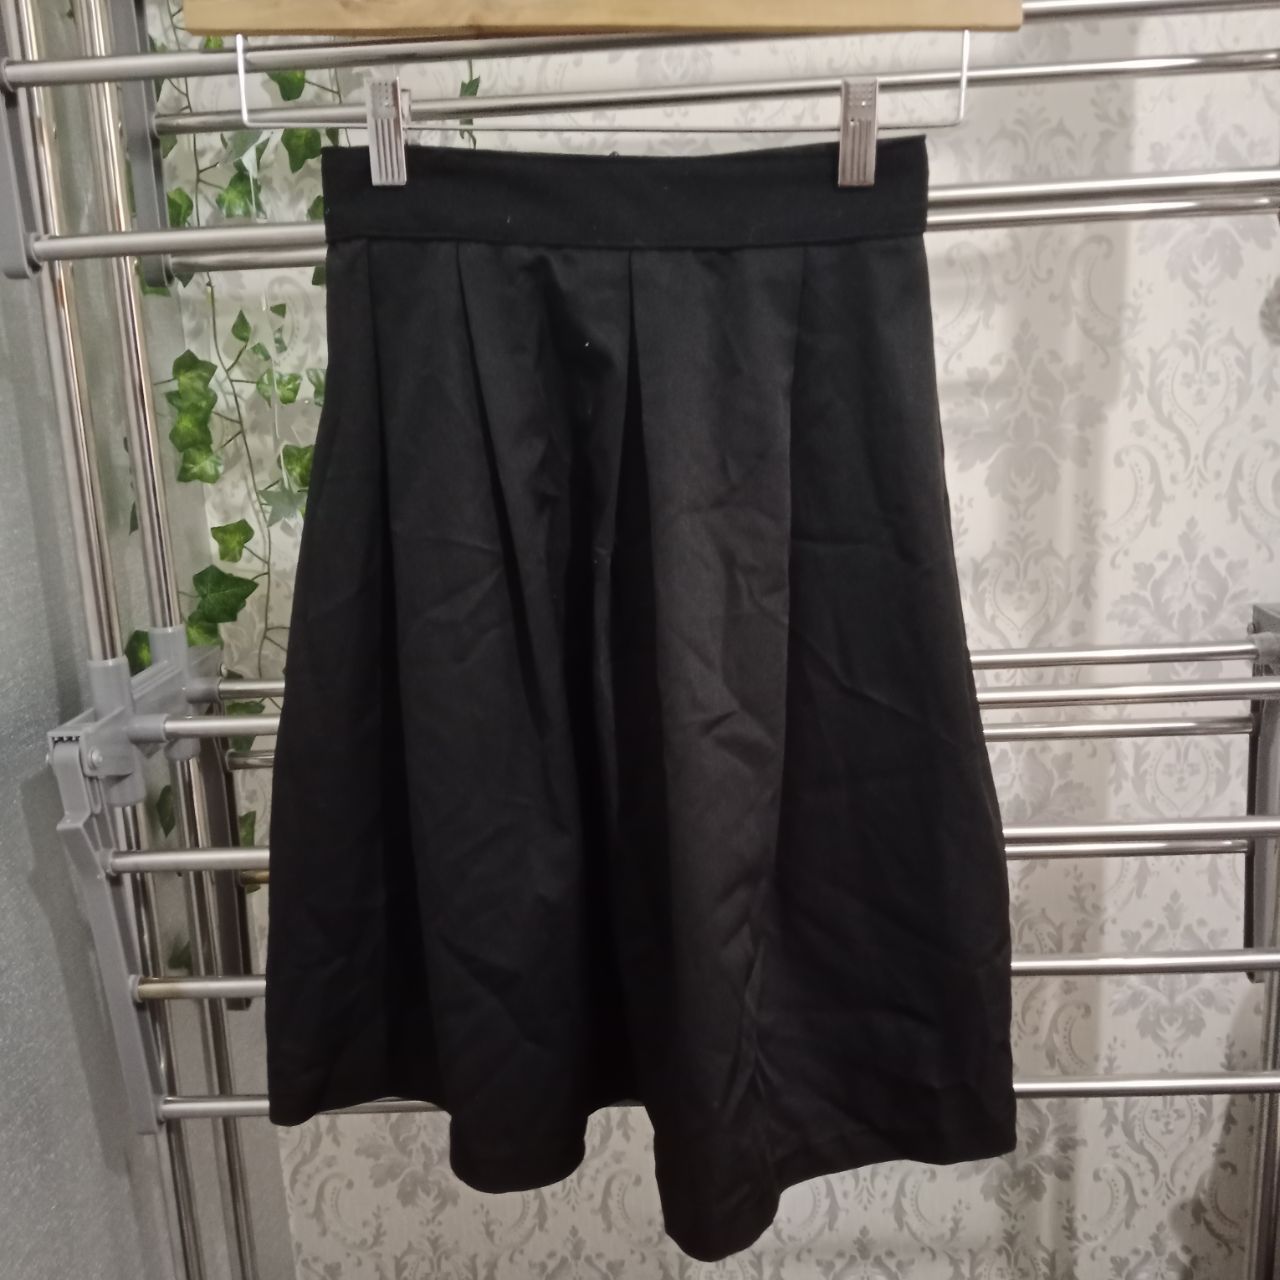 черная школьная юбка